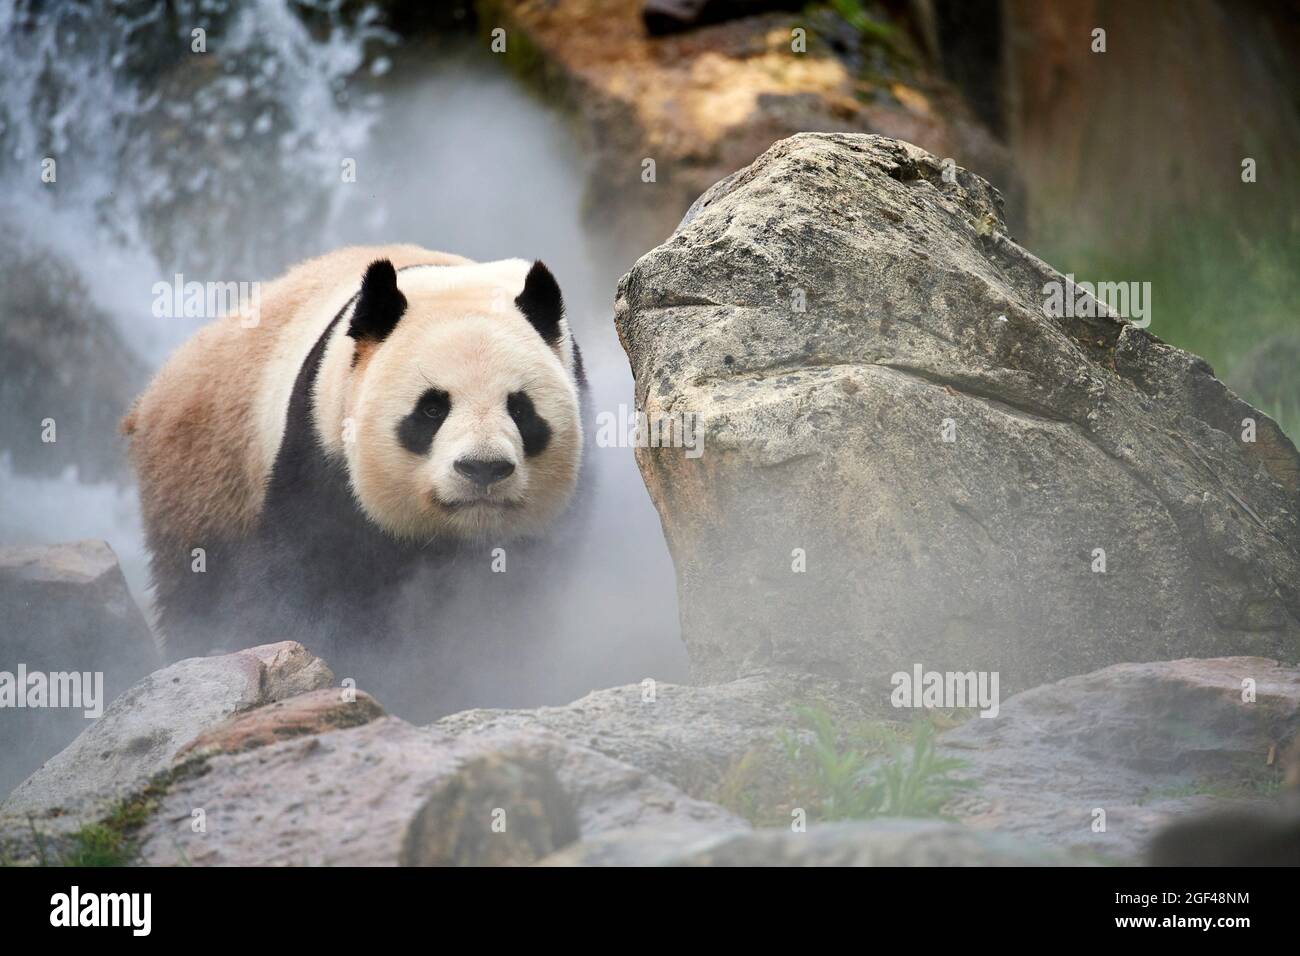 Panda gigante (Ailuropoda melanoleuca) macho en su recinto en niebla, cautivo en el zoológico de Beauval, Saint Aignan sur Cher, Francia. Se crea la niebla Foto de stock